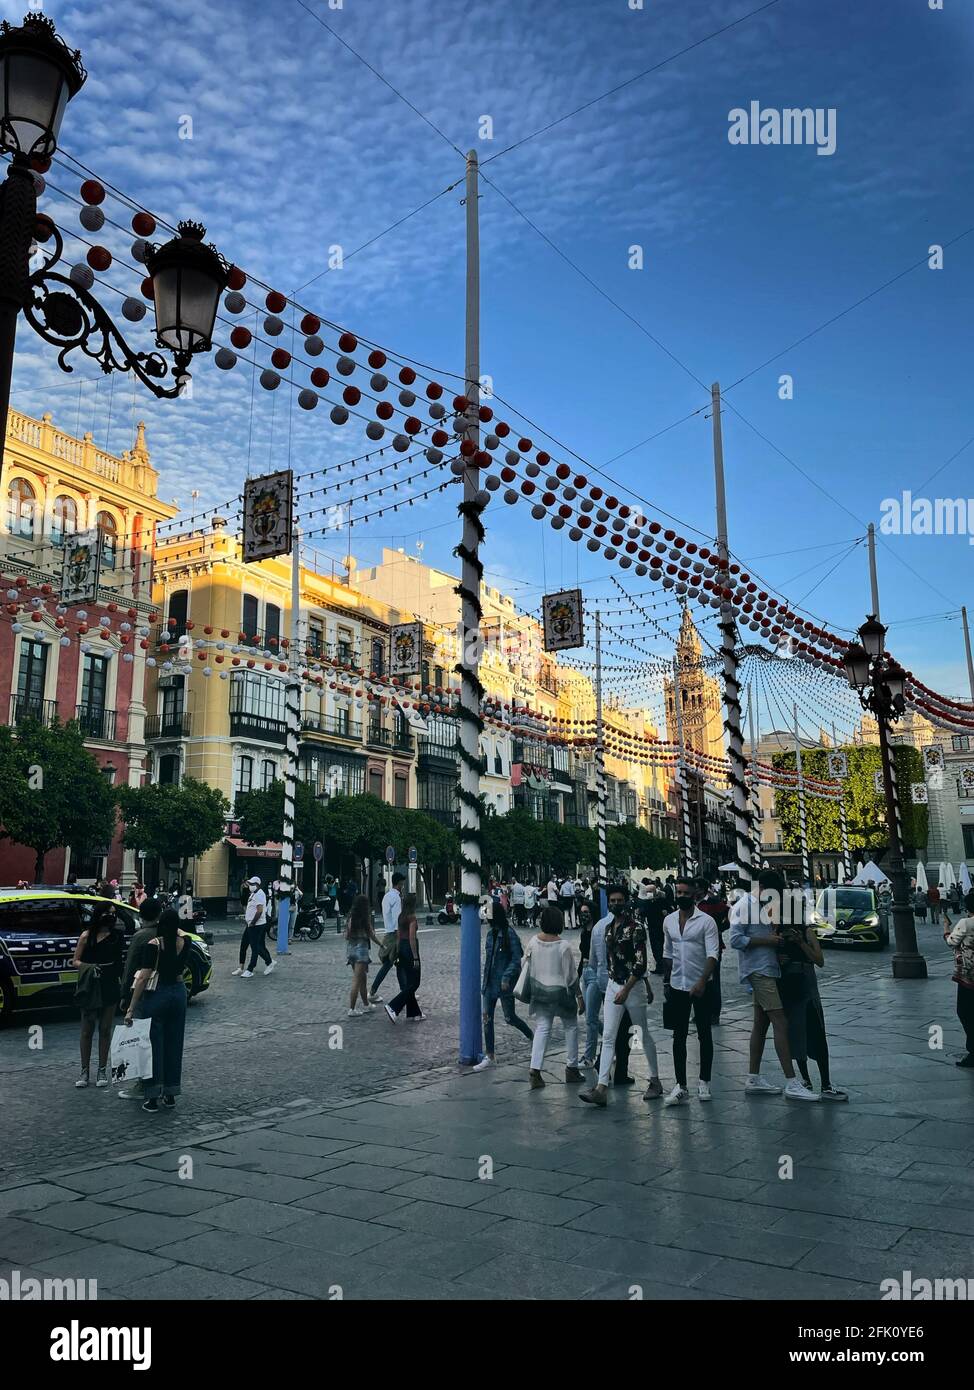 SEVILLA, SPAGNA - Apr 18, 2021: Gruppo di persone che camminano in Plaza San Francisco a Siviglia con l'illuminazione della fiera di aprile con la Giralda nel b Foto Stock